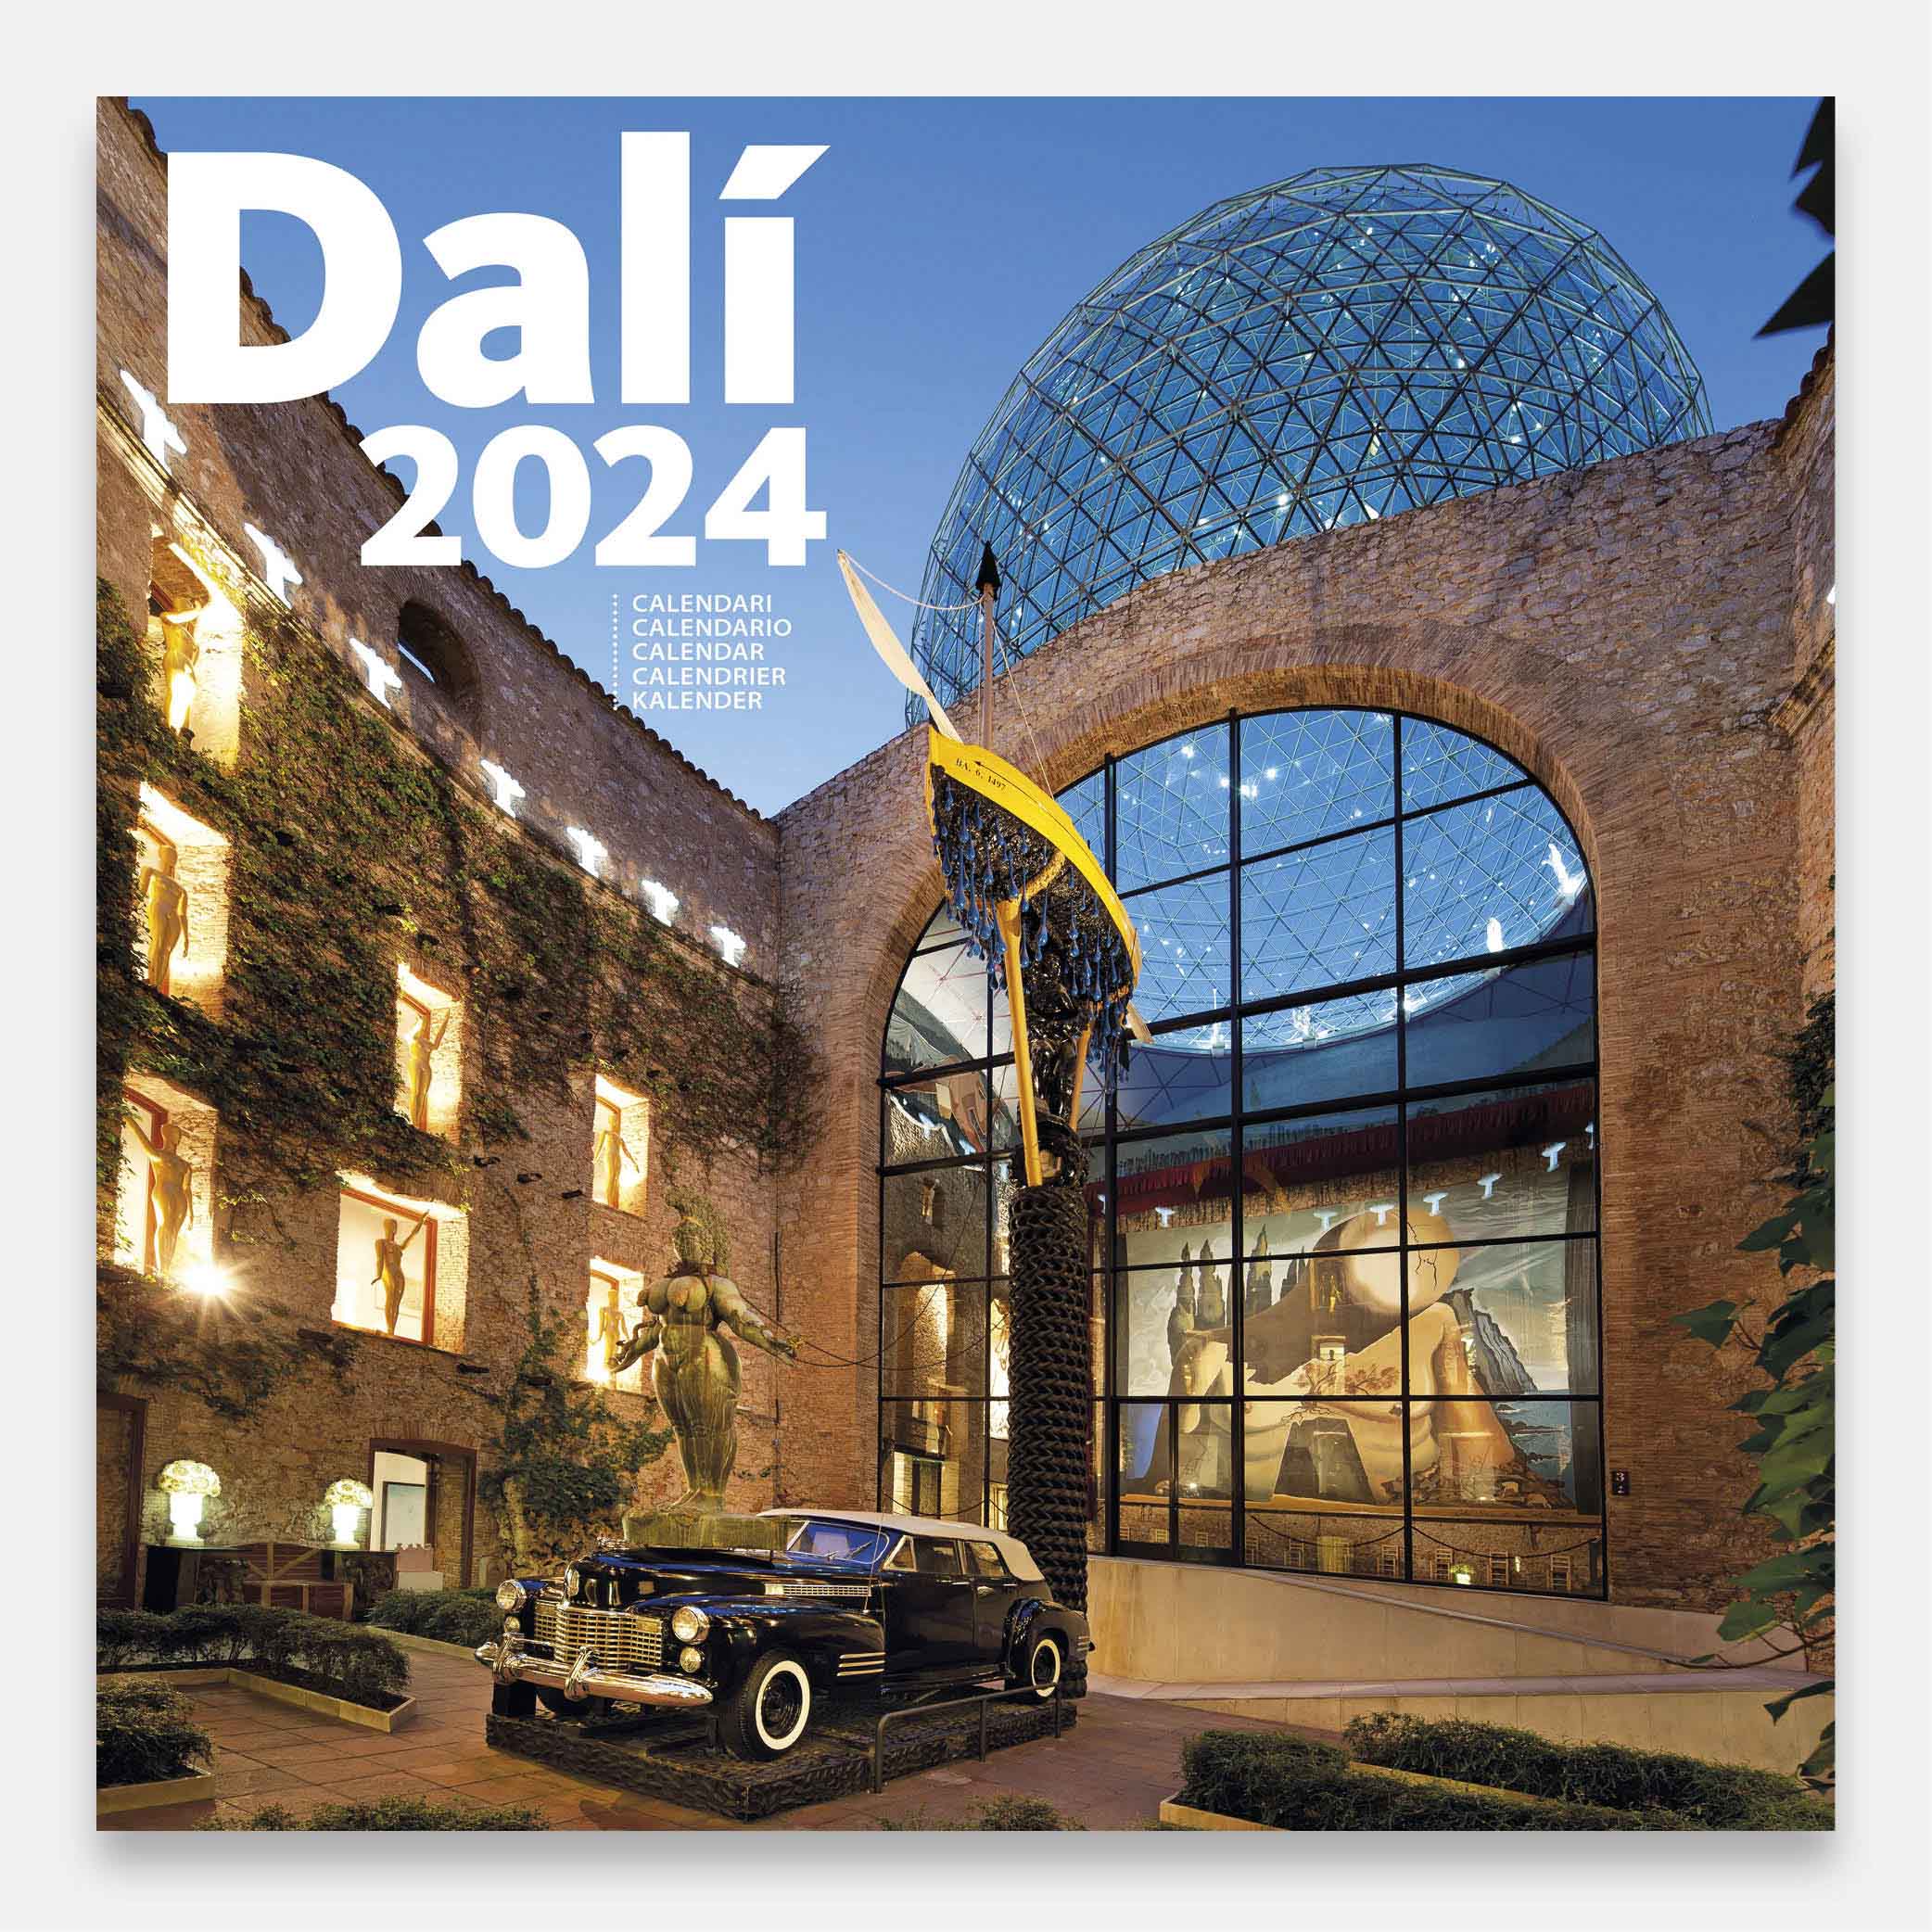 Calendario 2024 Dalí 24dg calendario pared 2024 salvador dali